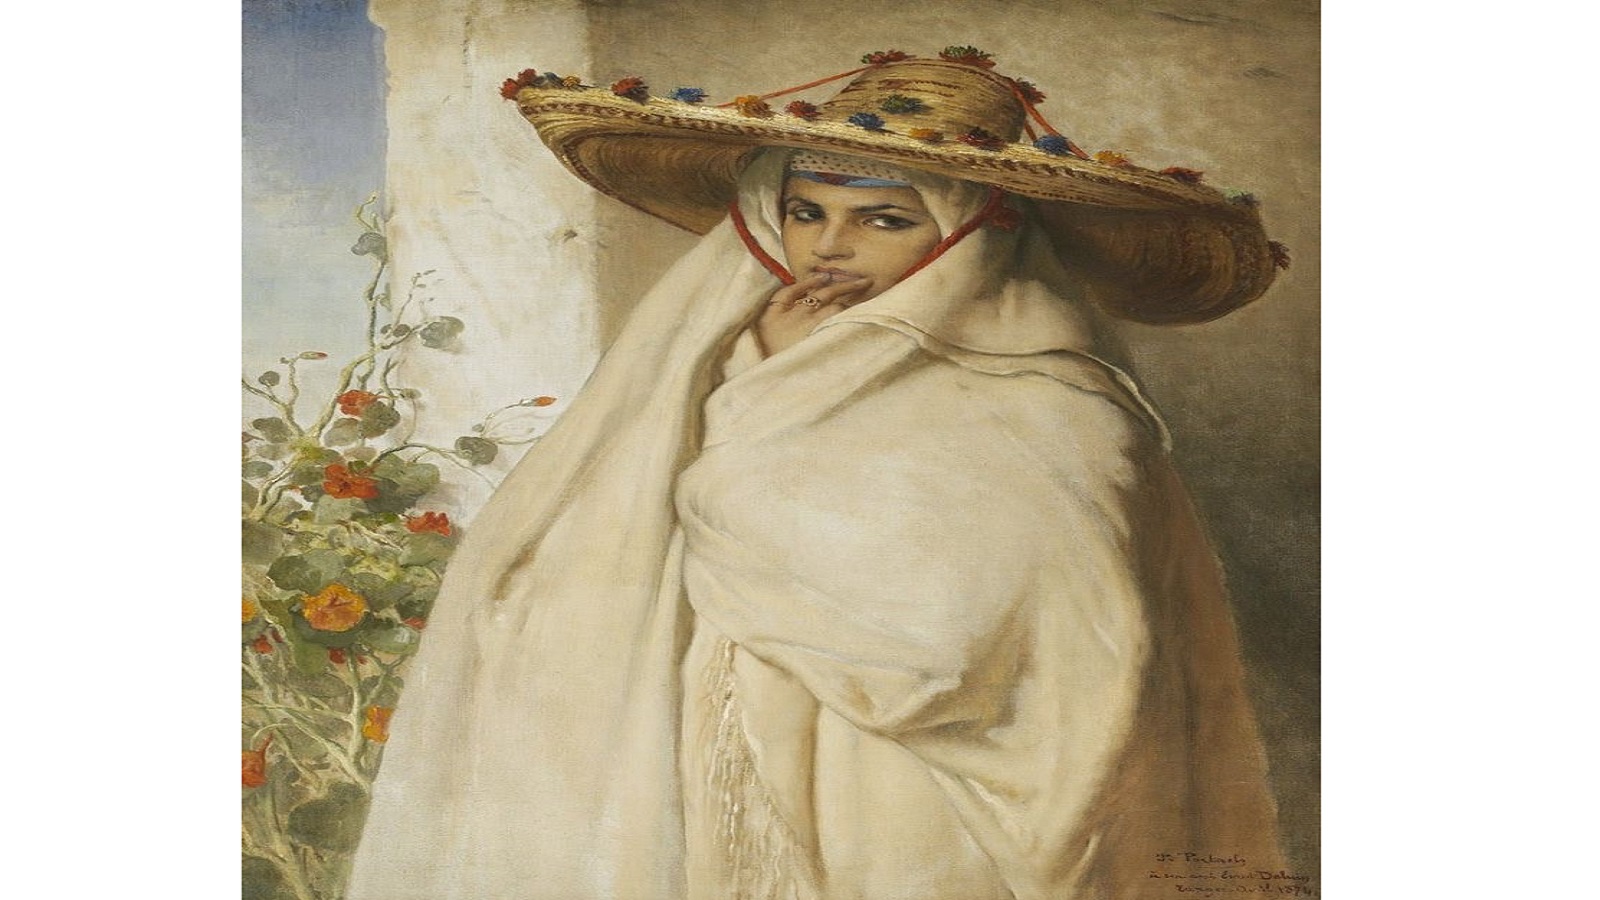 لوحة شهيرة للرسام البلجيكي يان بورتايلس وقد خلد بها شابة طنجاوية بلباس الحايك عام 1870